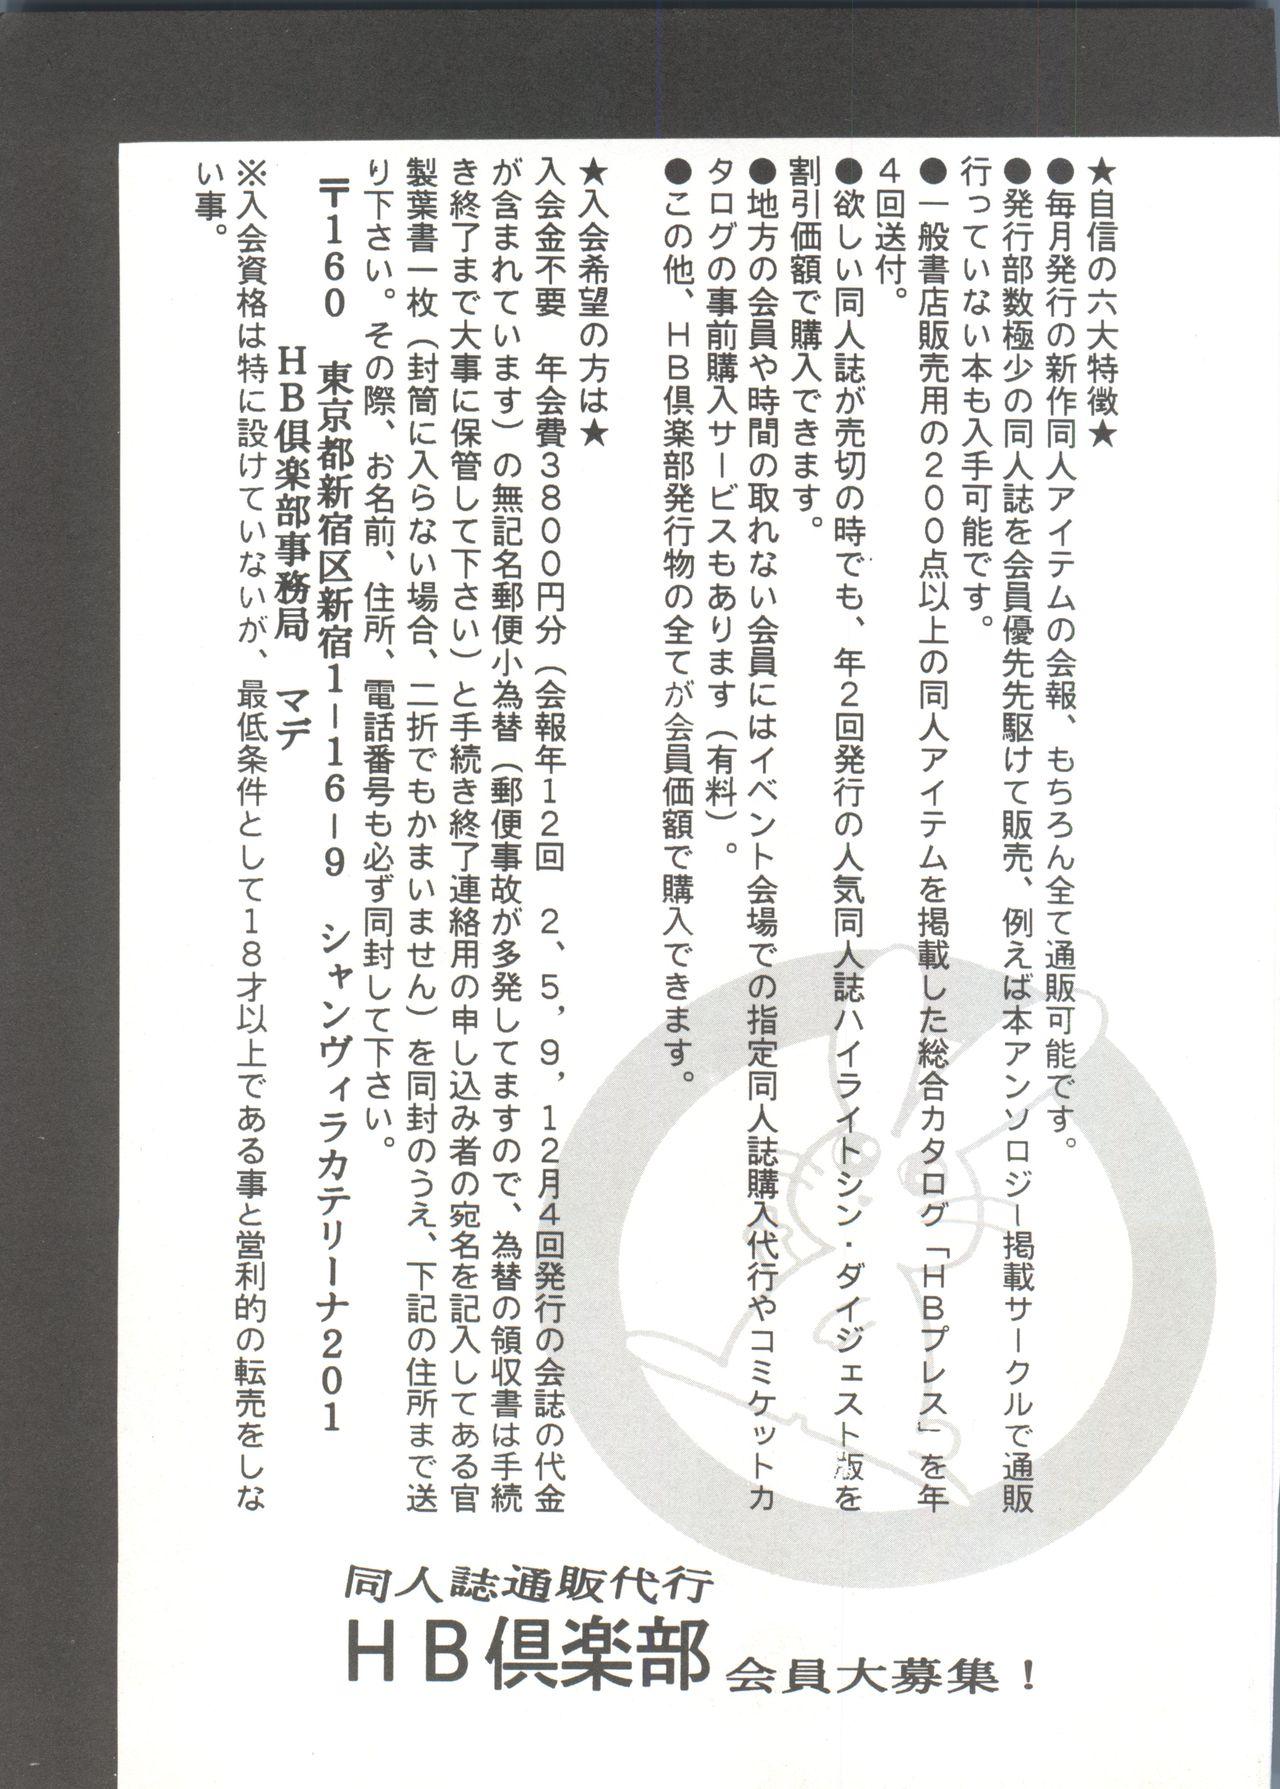 Bishoujo Doujinshi Anthology 7 - Moon Paradise 4 Tsuki no Rakuen 147